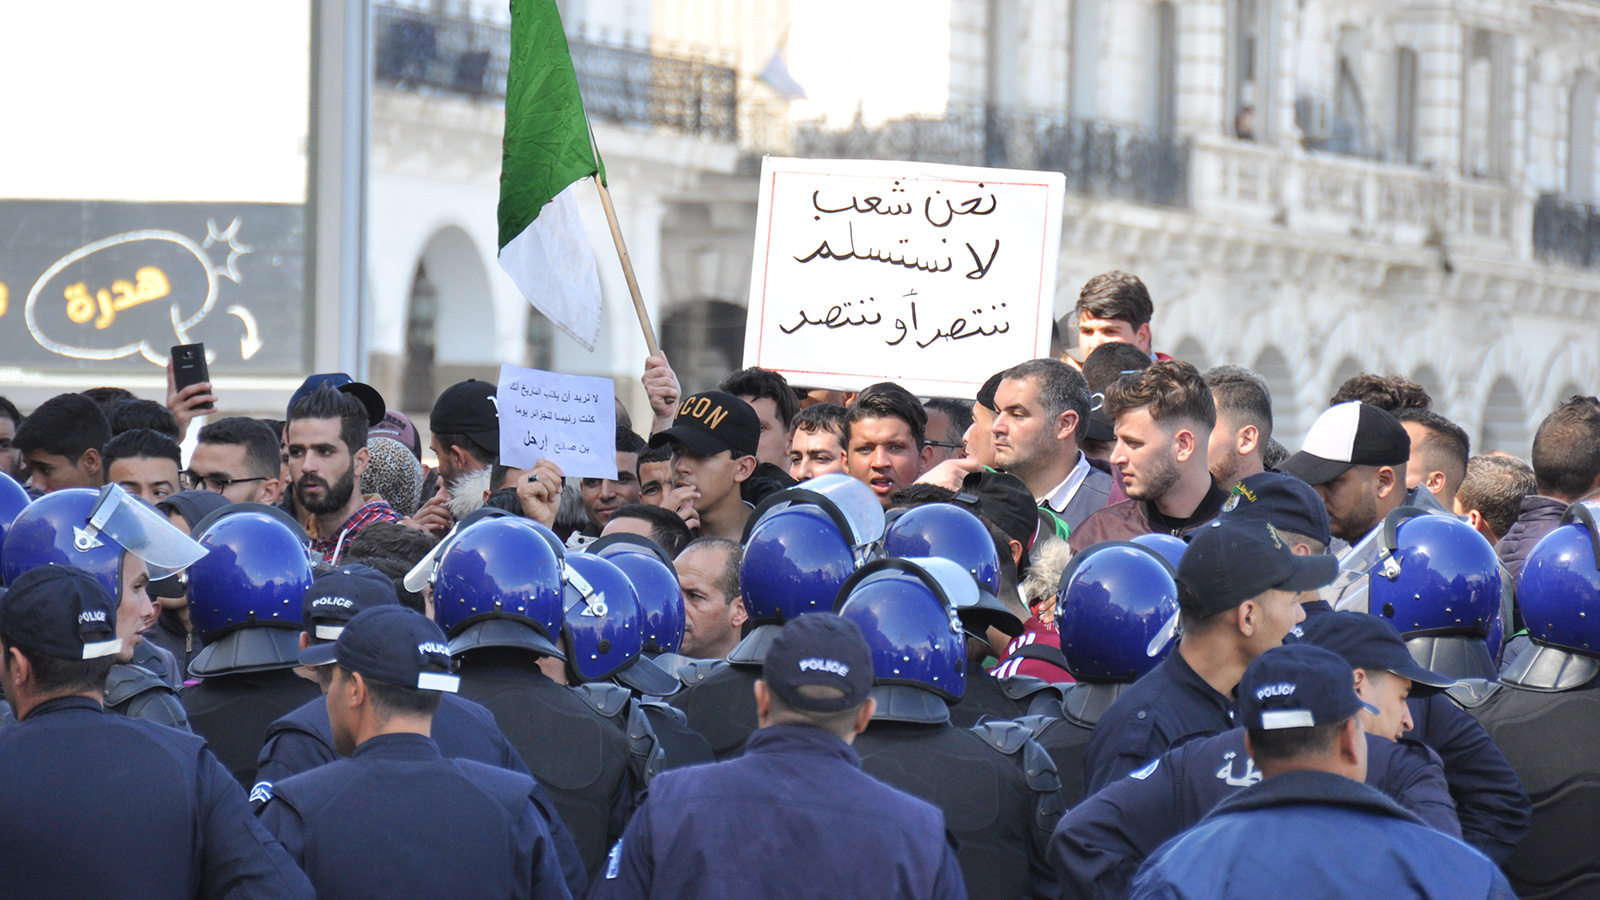 ‪المحتجون أكدوا إصرارهم على مواصلة الحراك حتى يتحقق مطلبهم في رحيل النظام‬ (الجزيرة)